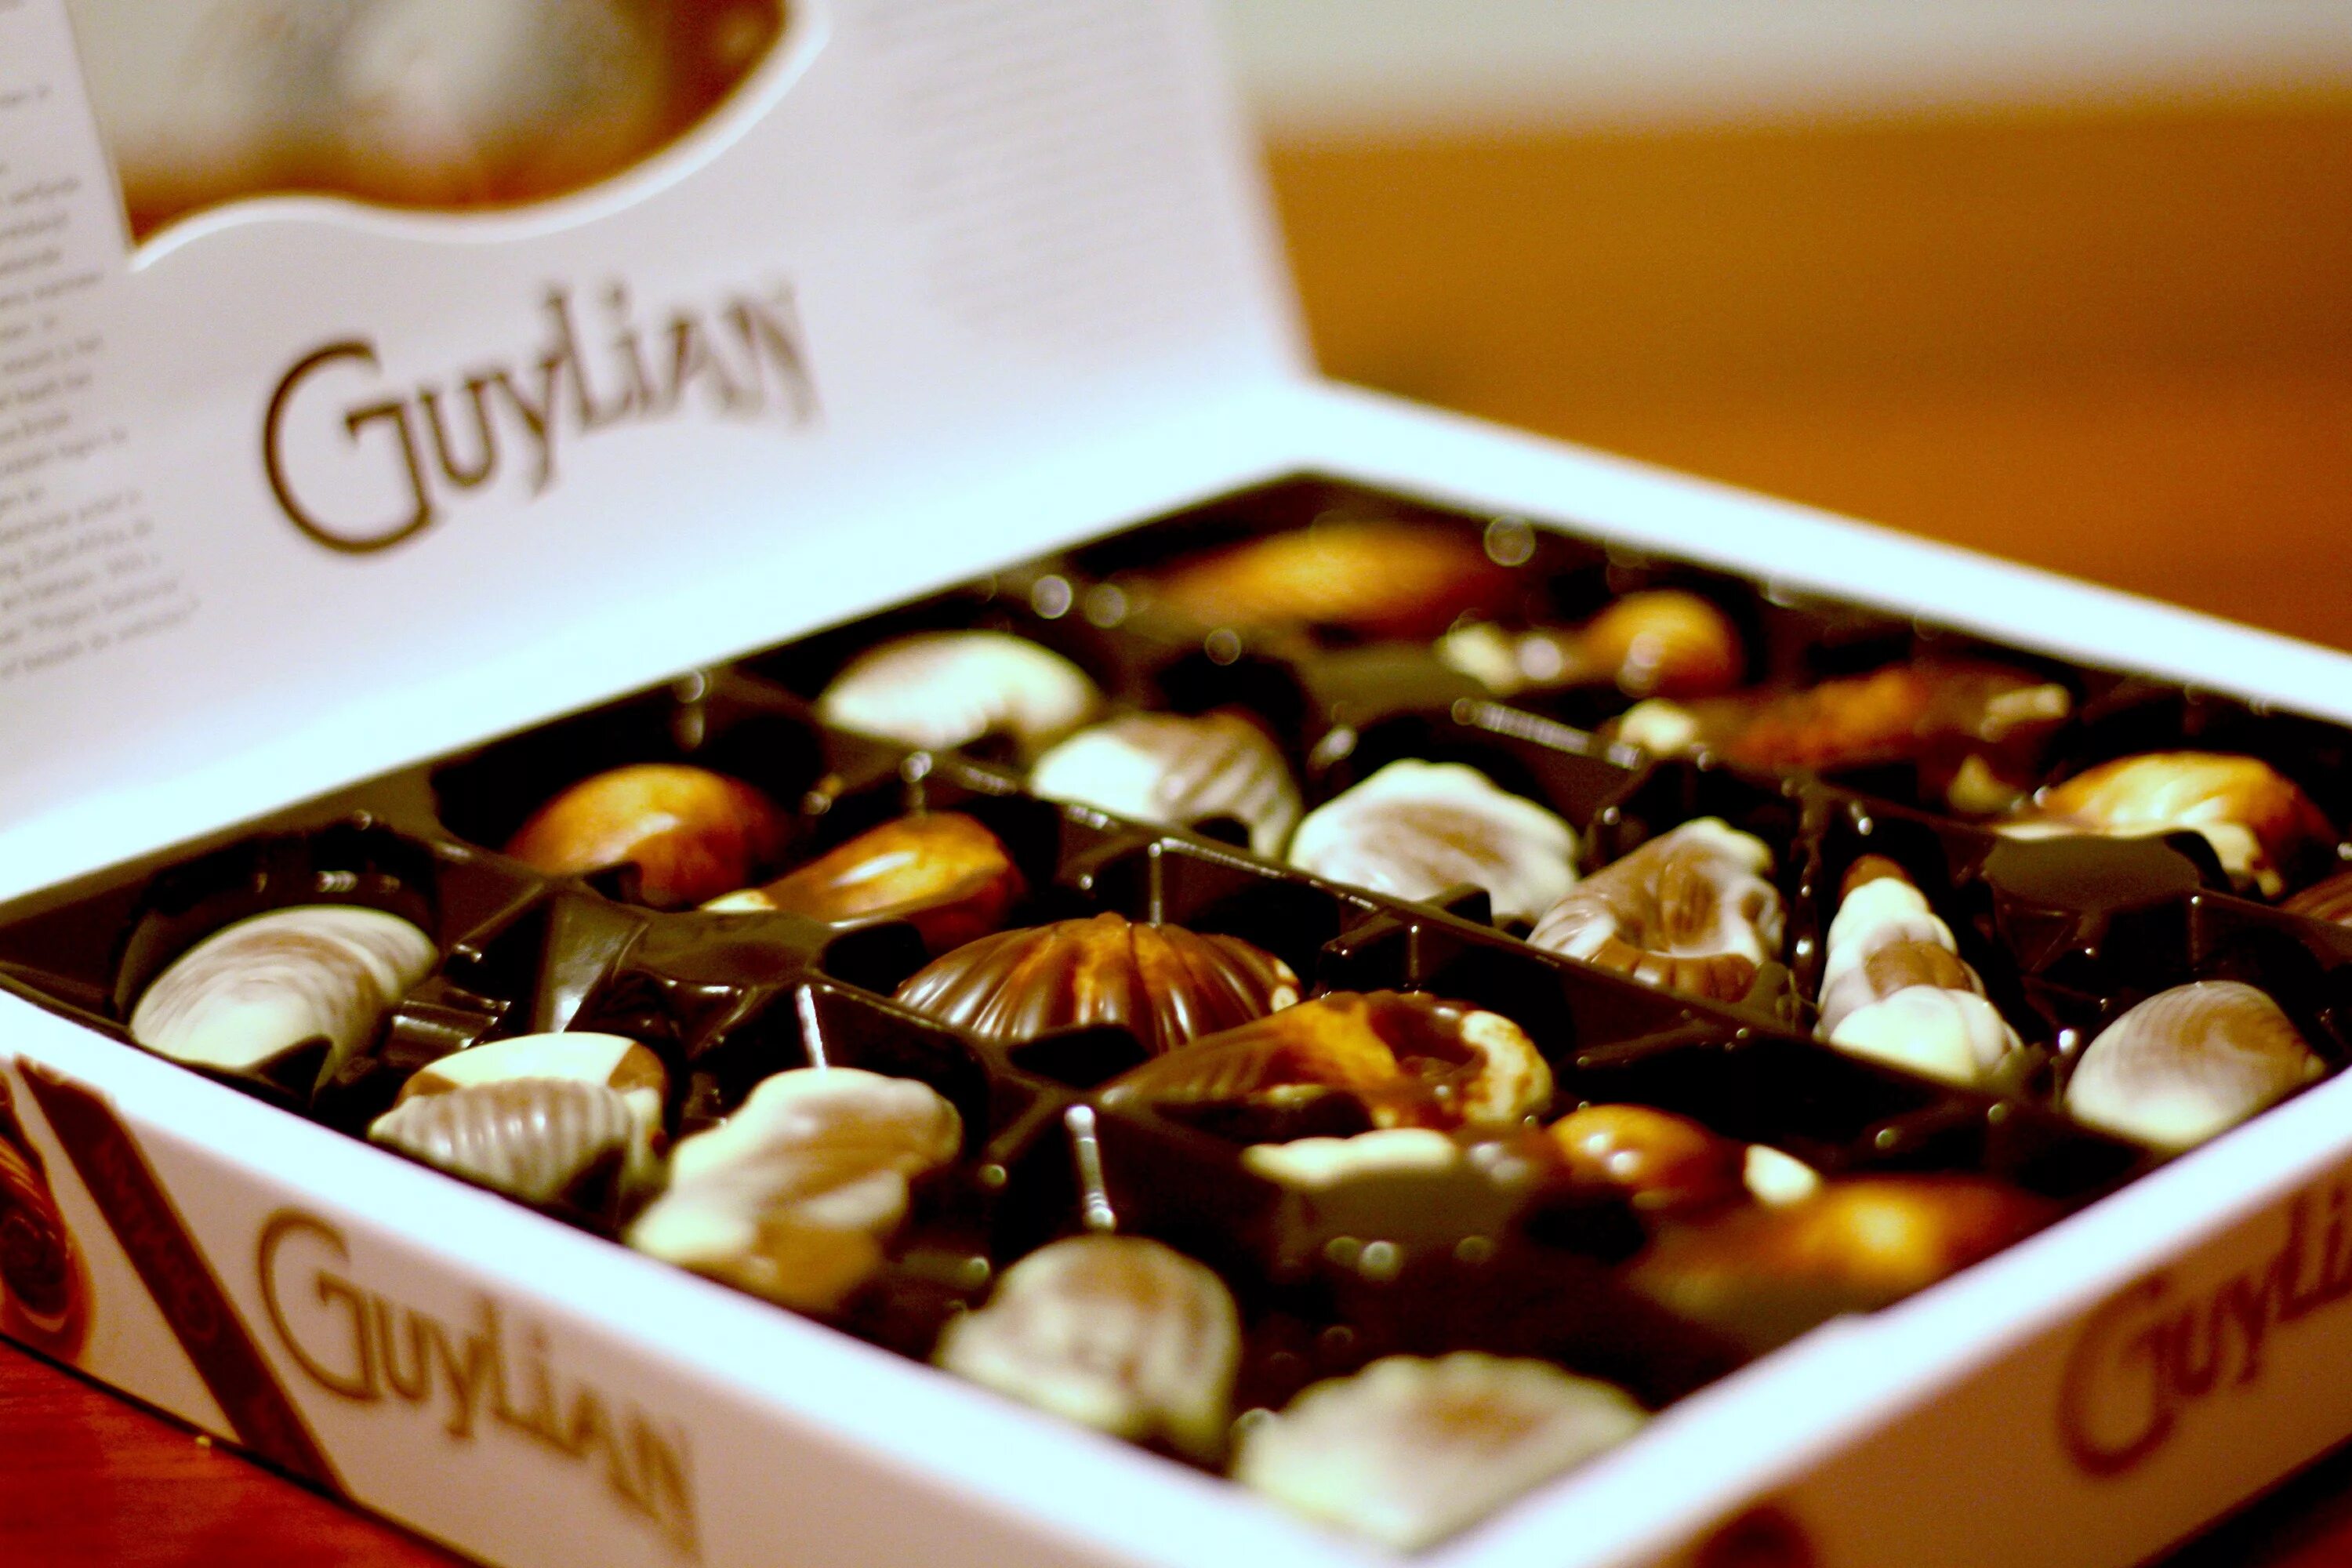 Конфеты в коробках ассортимент. Бельгийский шоколад Guylian. Конфеты Guylian Belgian Chocolate. Шоколад пралине Бельгия. Пралине (бельгийский шоколад).